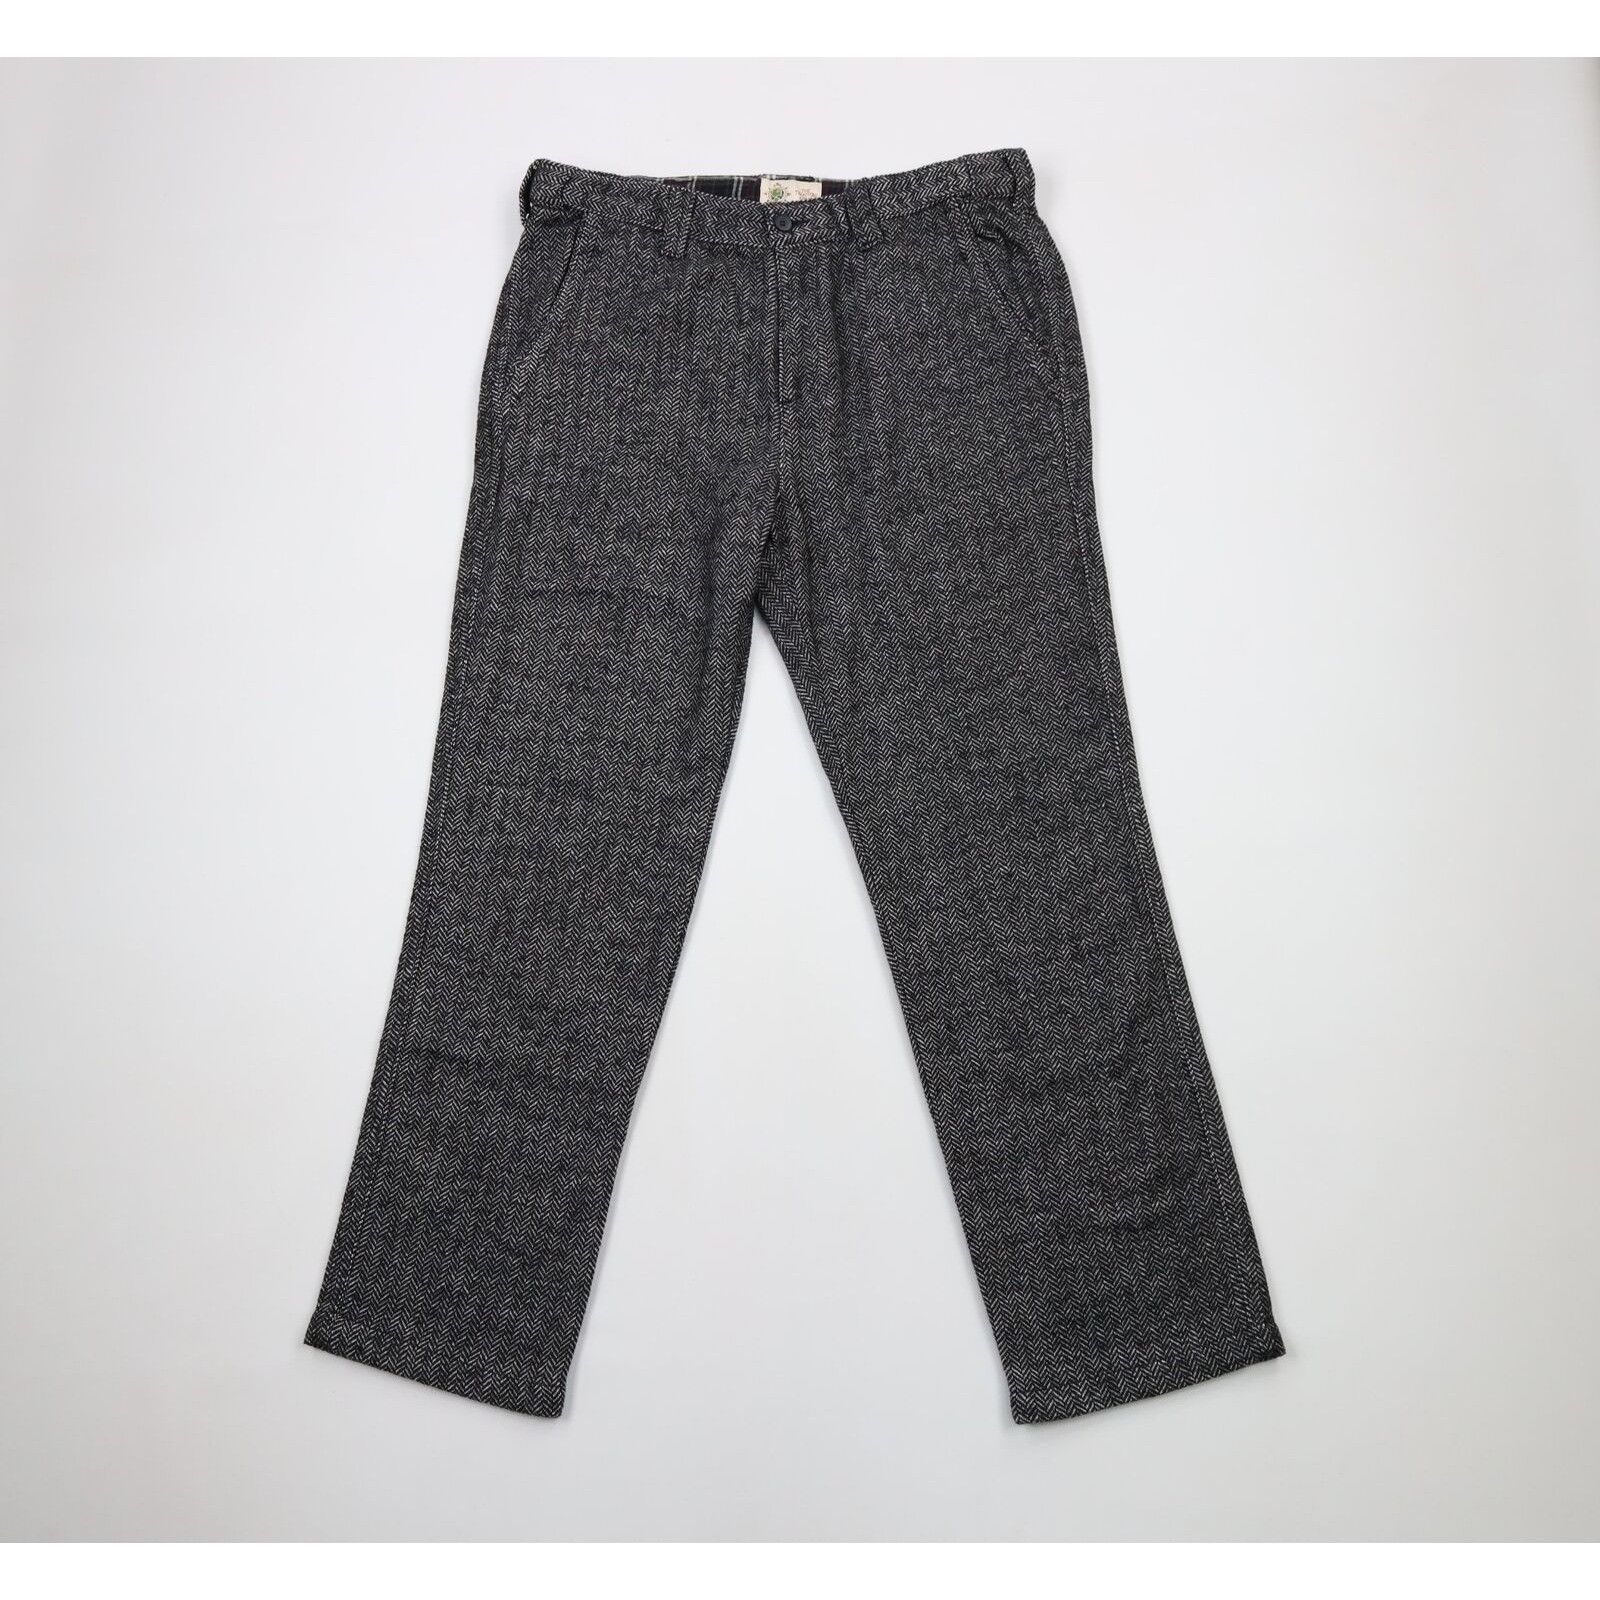 Vintage Vintage 90s Streetwear Tweed Herringbone Chino Pants Size US 34 / EU 50 - 1 Preview